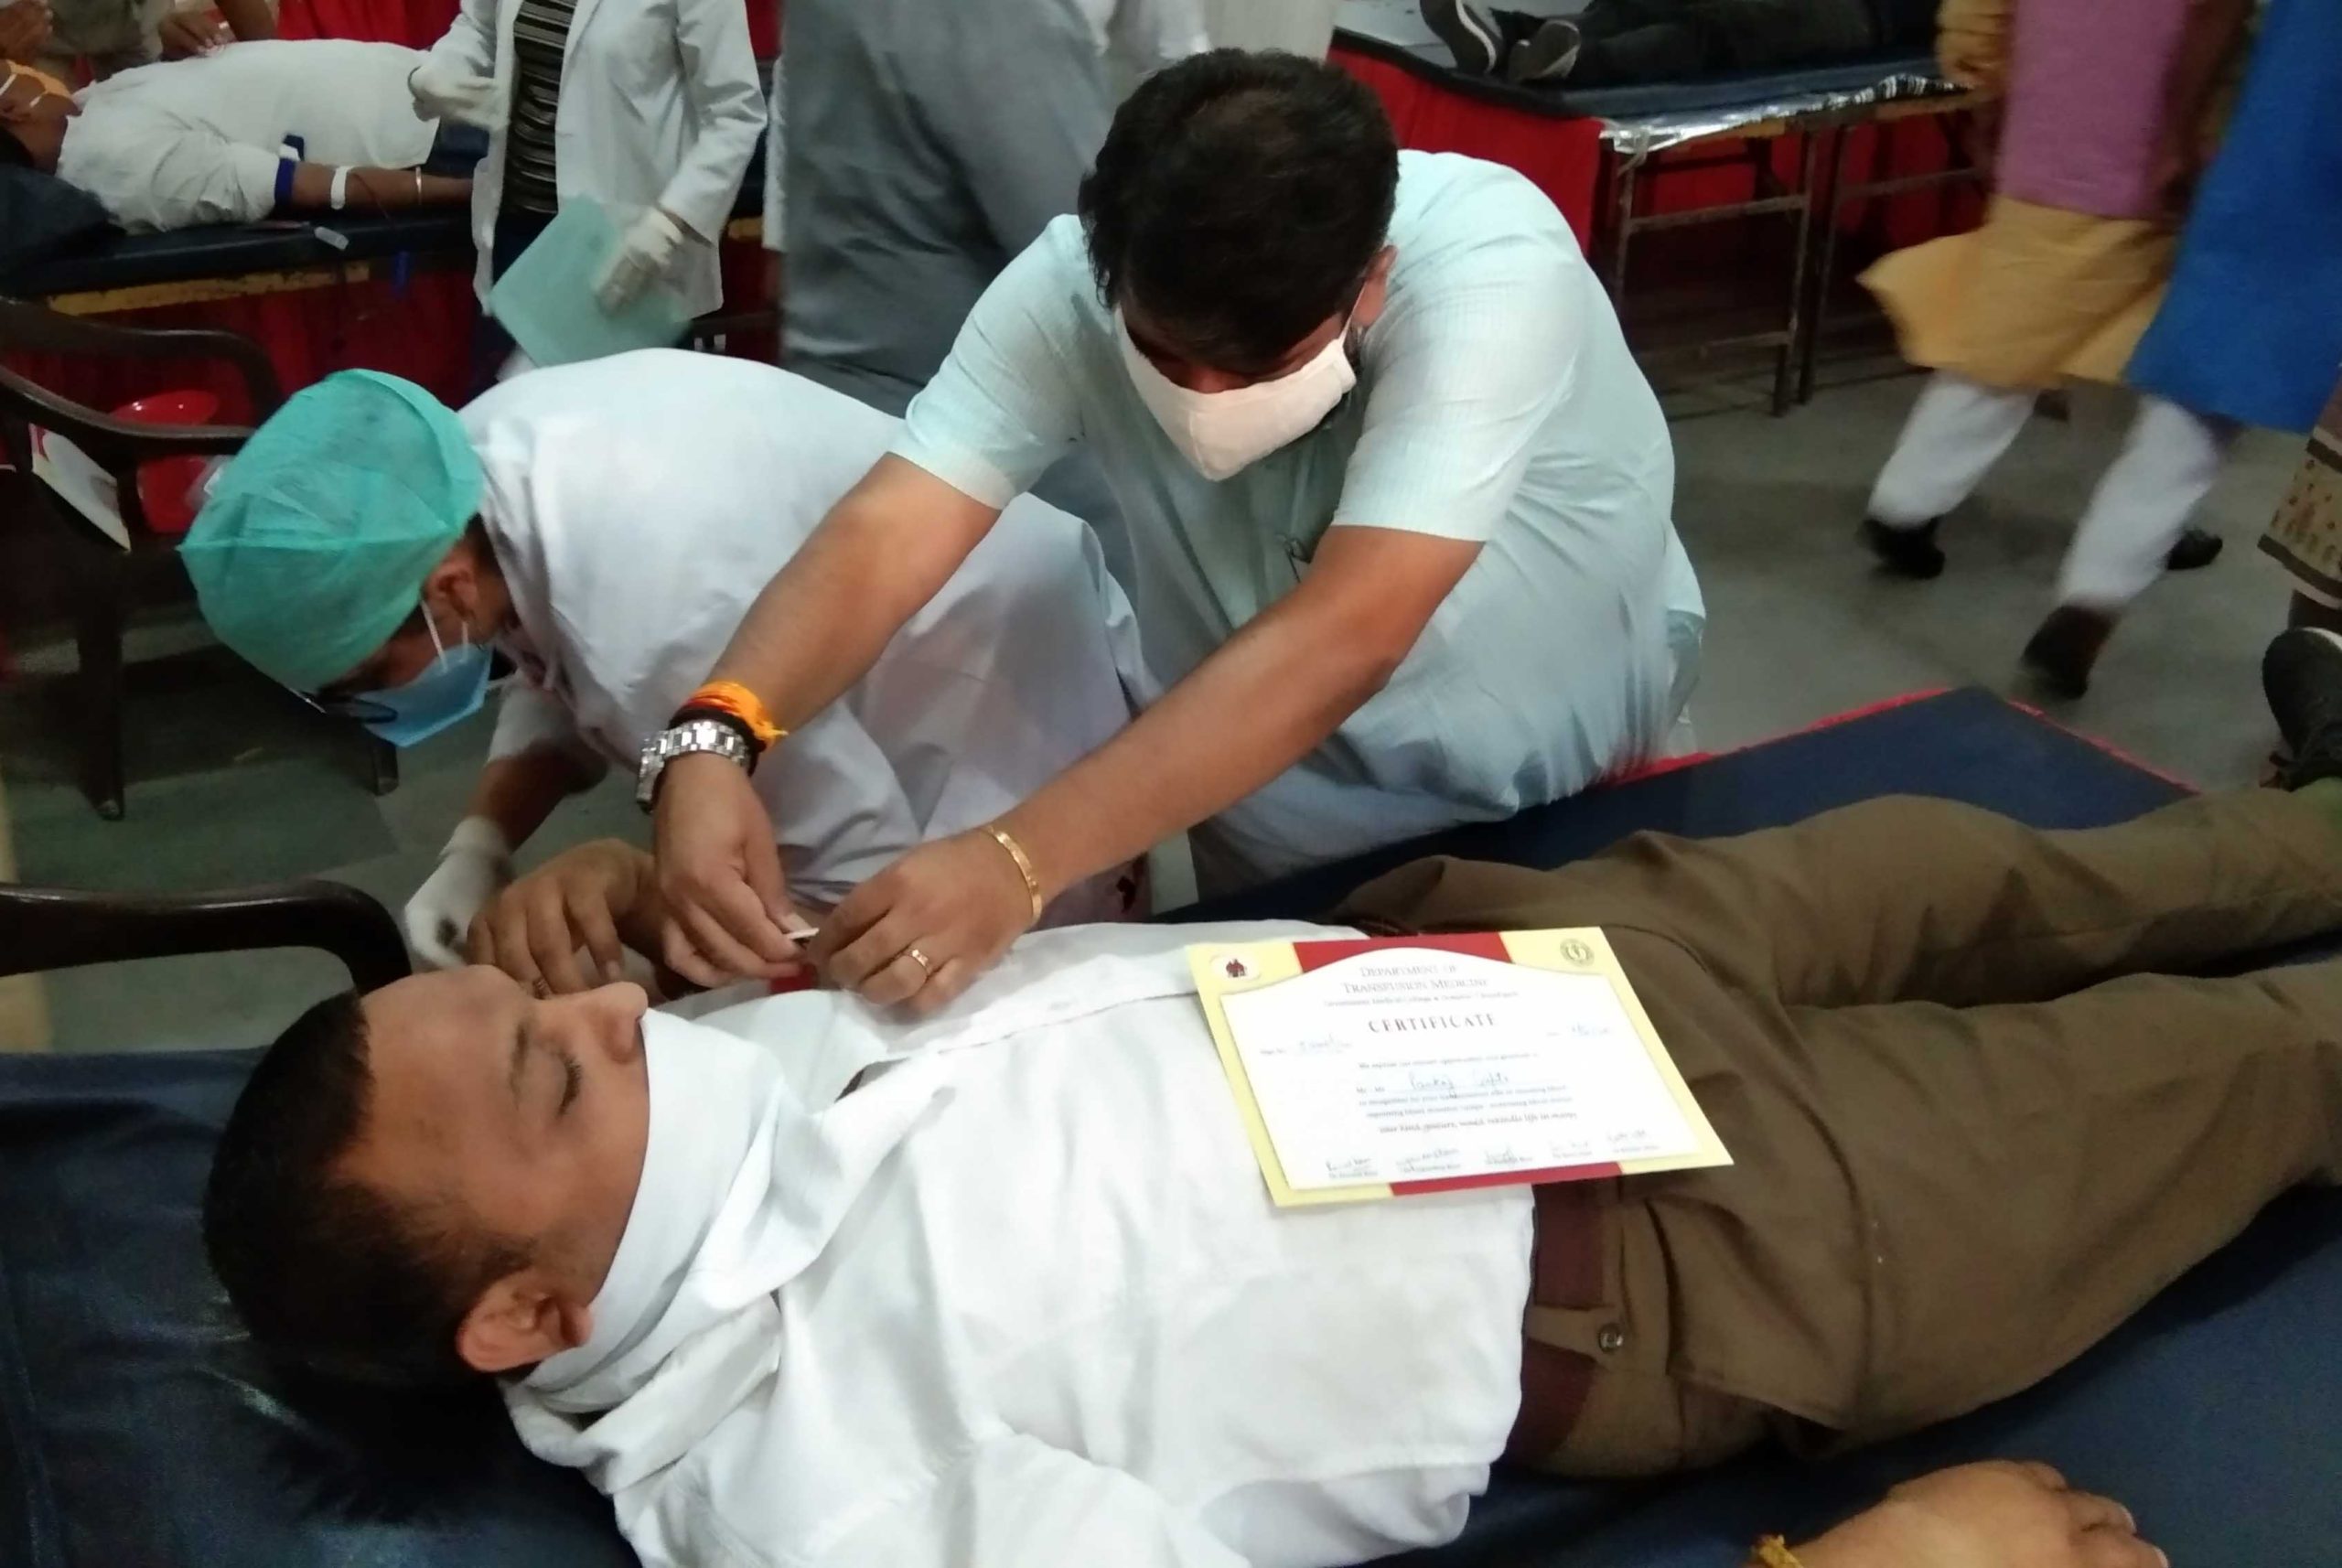 राष्ट्रीय स्वयं सेवक संघ द्वारा लगाया गया रक्त दान शिविर, 101 लोगों ने किया रक्तदान